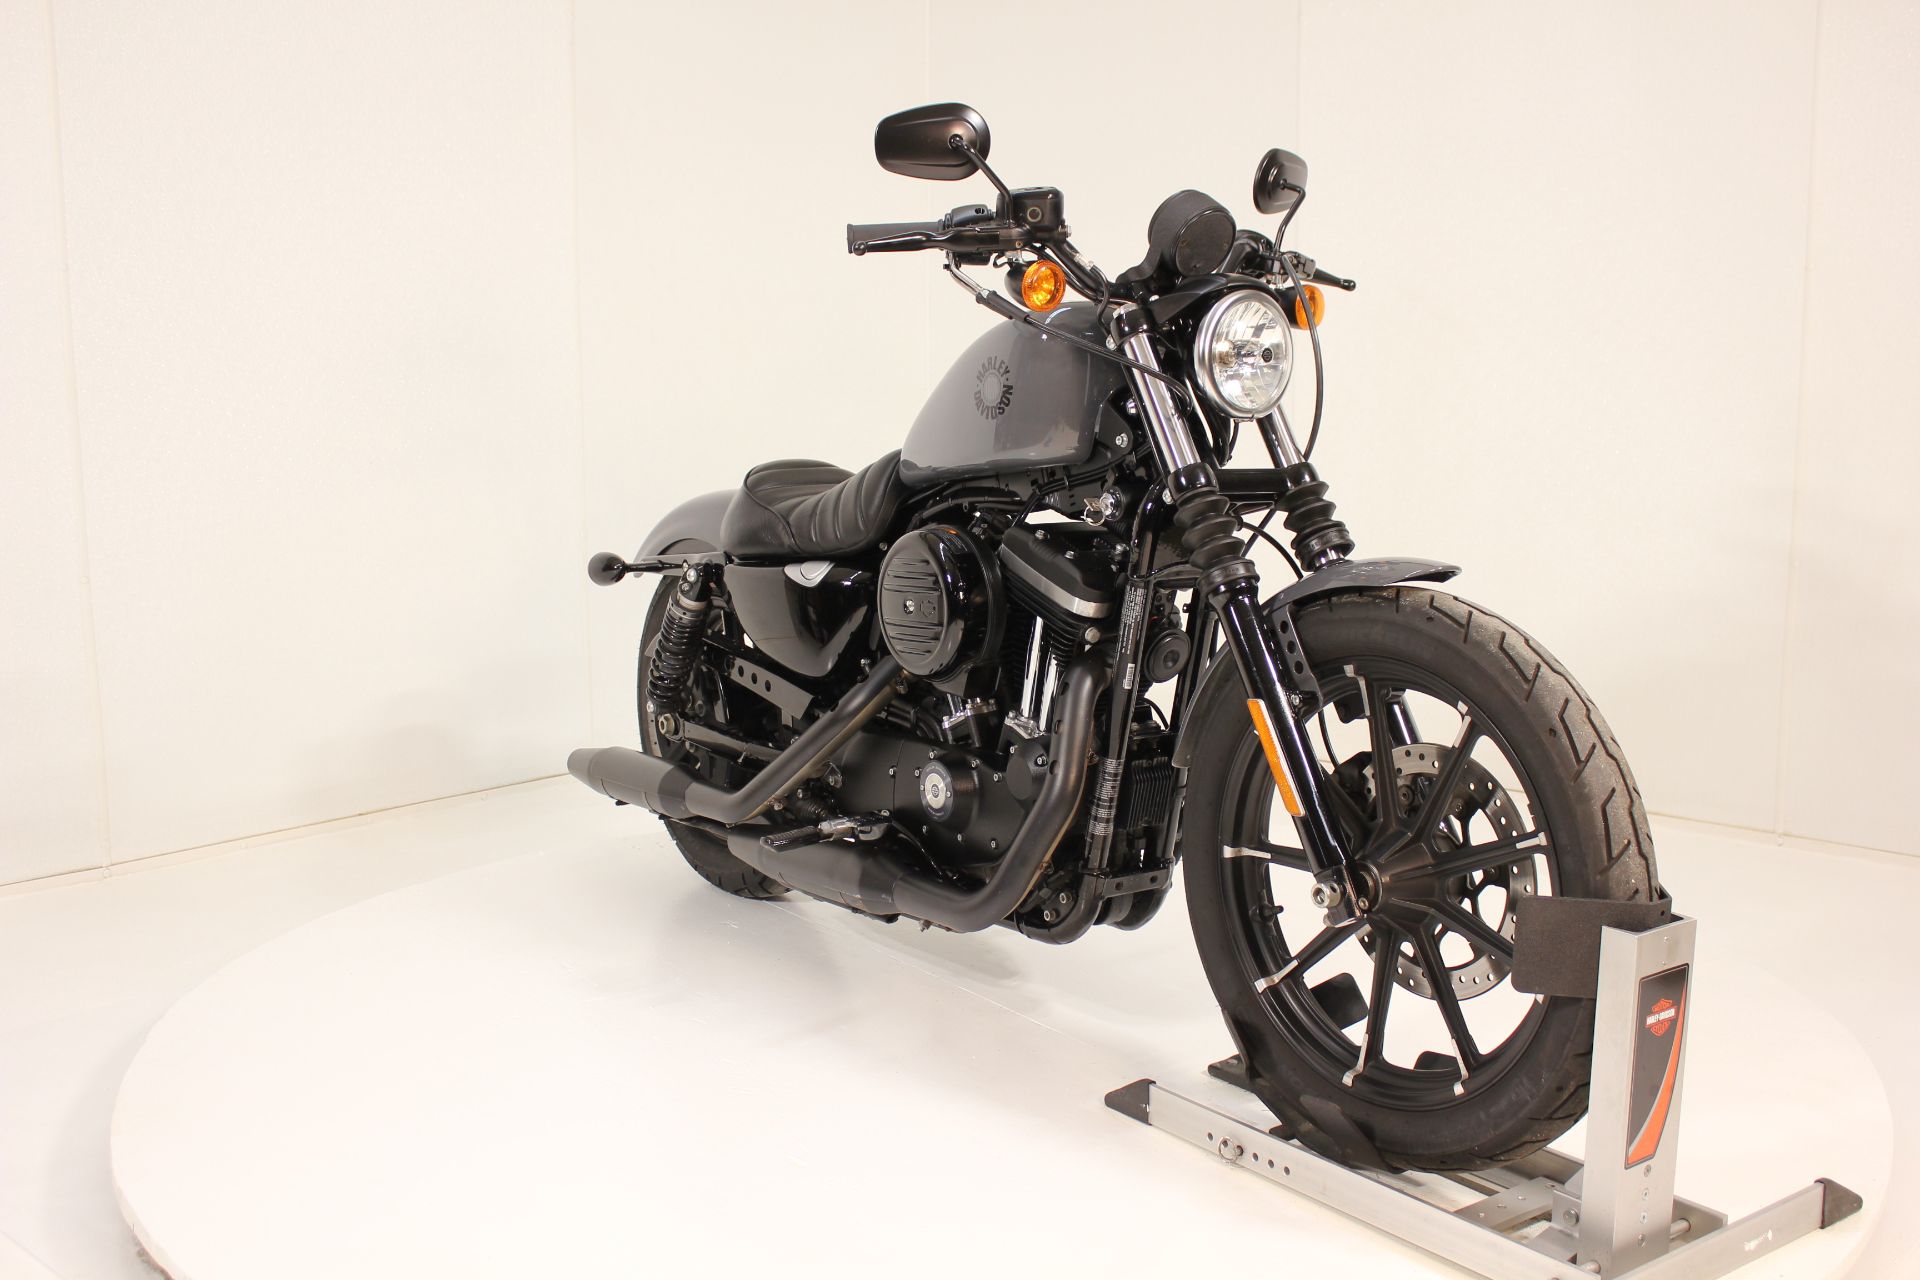 2022 Harley-Davidson Iron 883™ in Pittsfield, Massachusetts - Photo 6